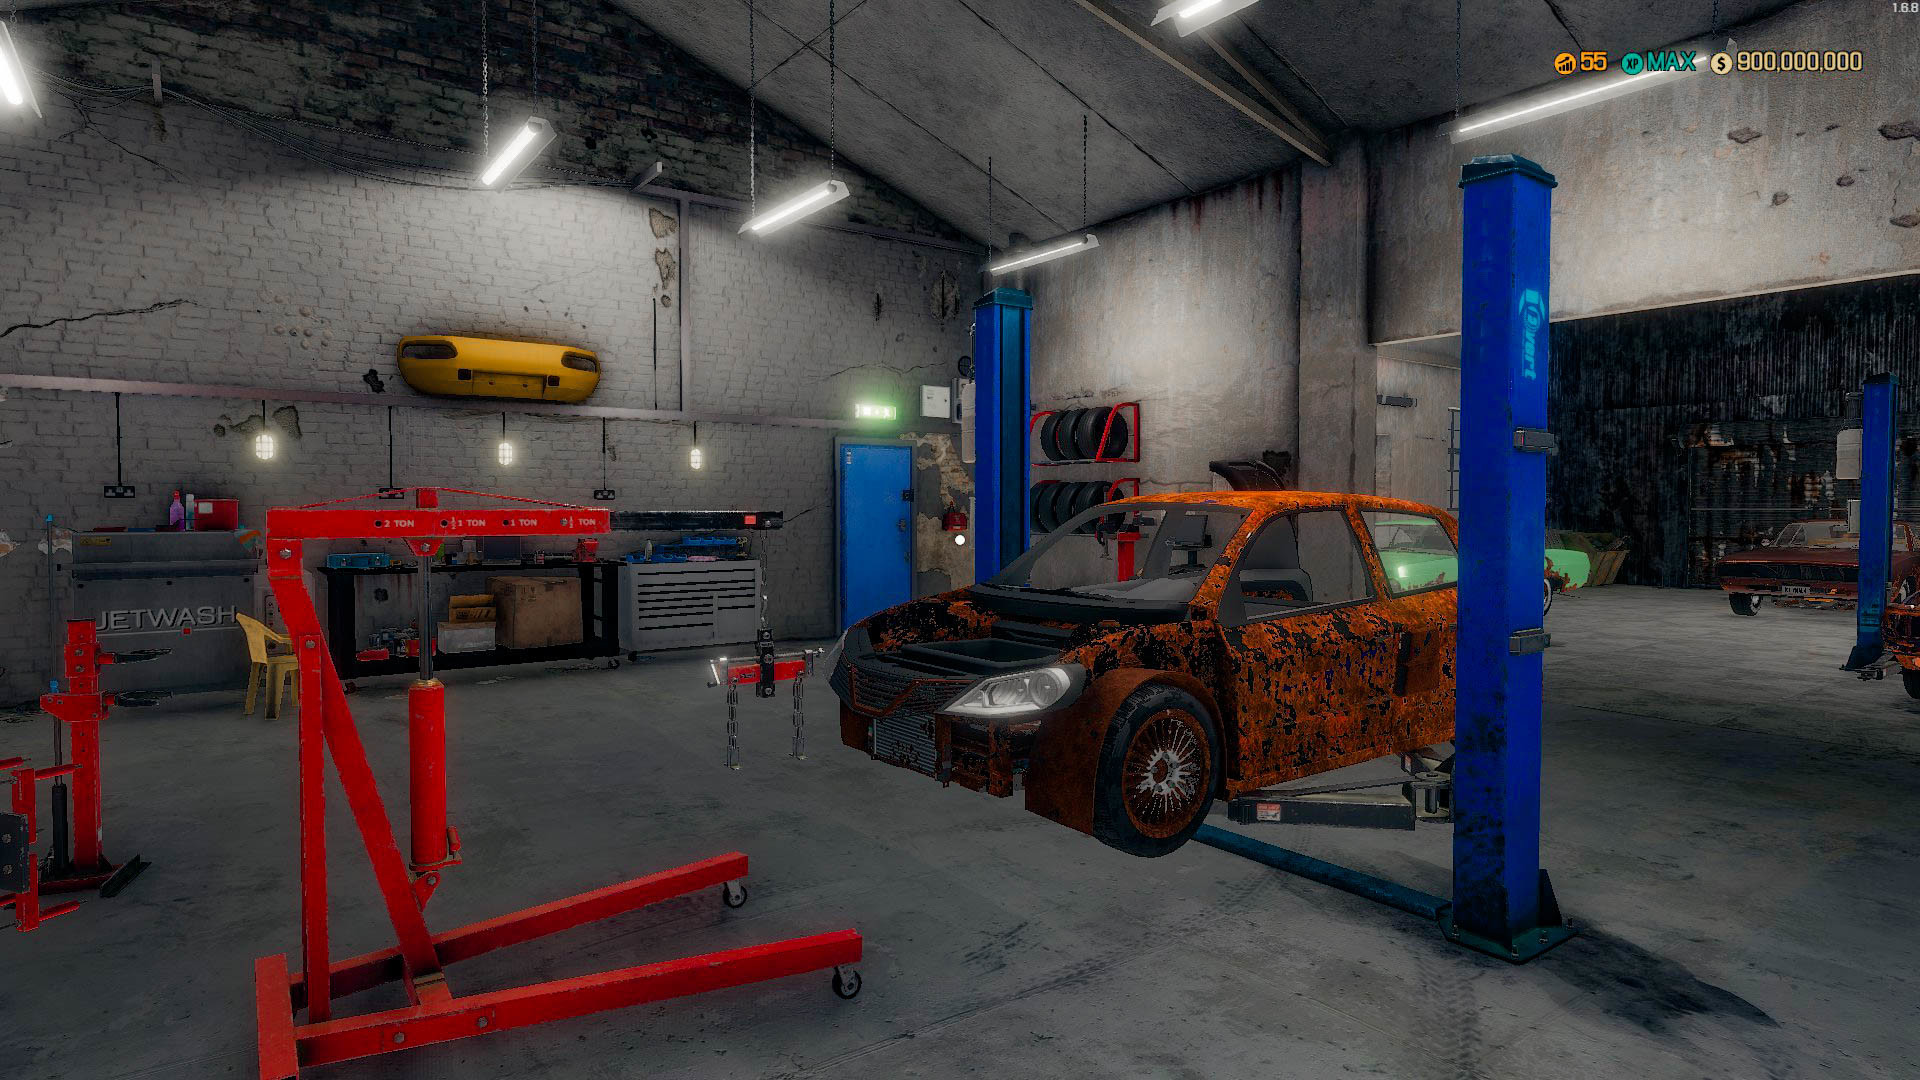 Steam Workshop::Car Dealership